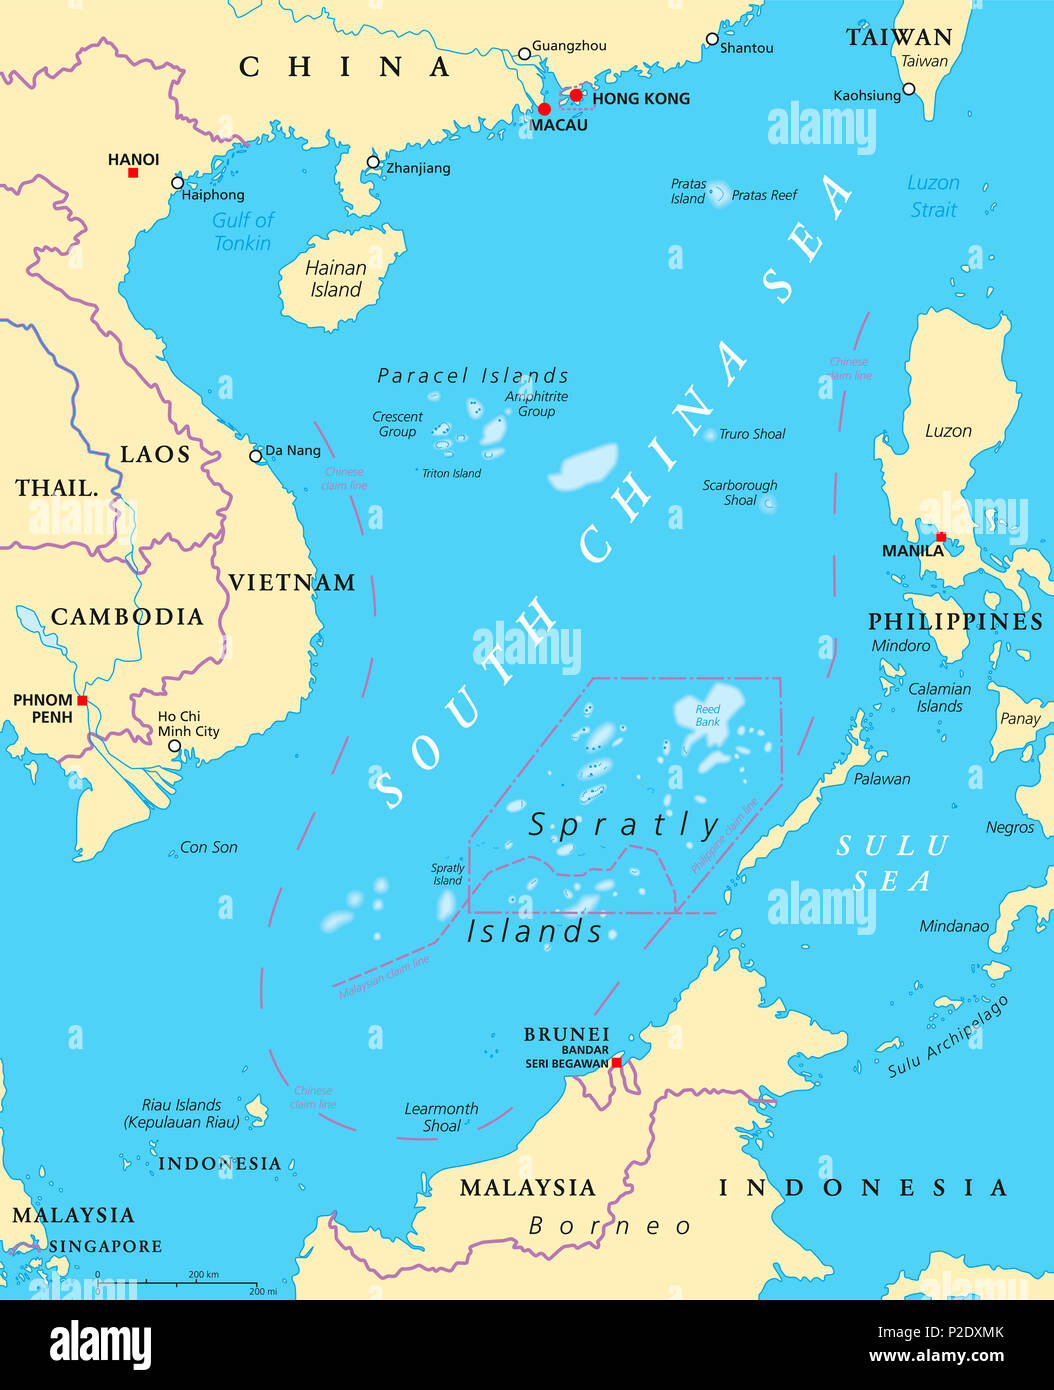 Las islas del Mar del Sur de China, el mapa político. Islas Paracel y Spratly. Parcialmente reclamadas por China y otros estados vecinos. Ilustración. Foto de stock